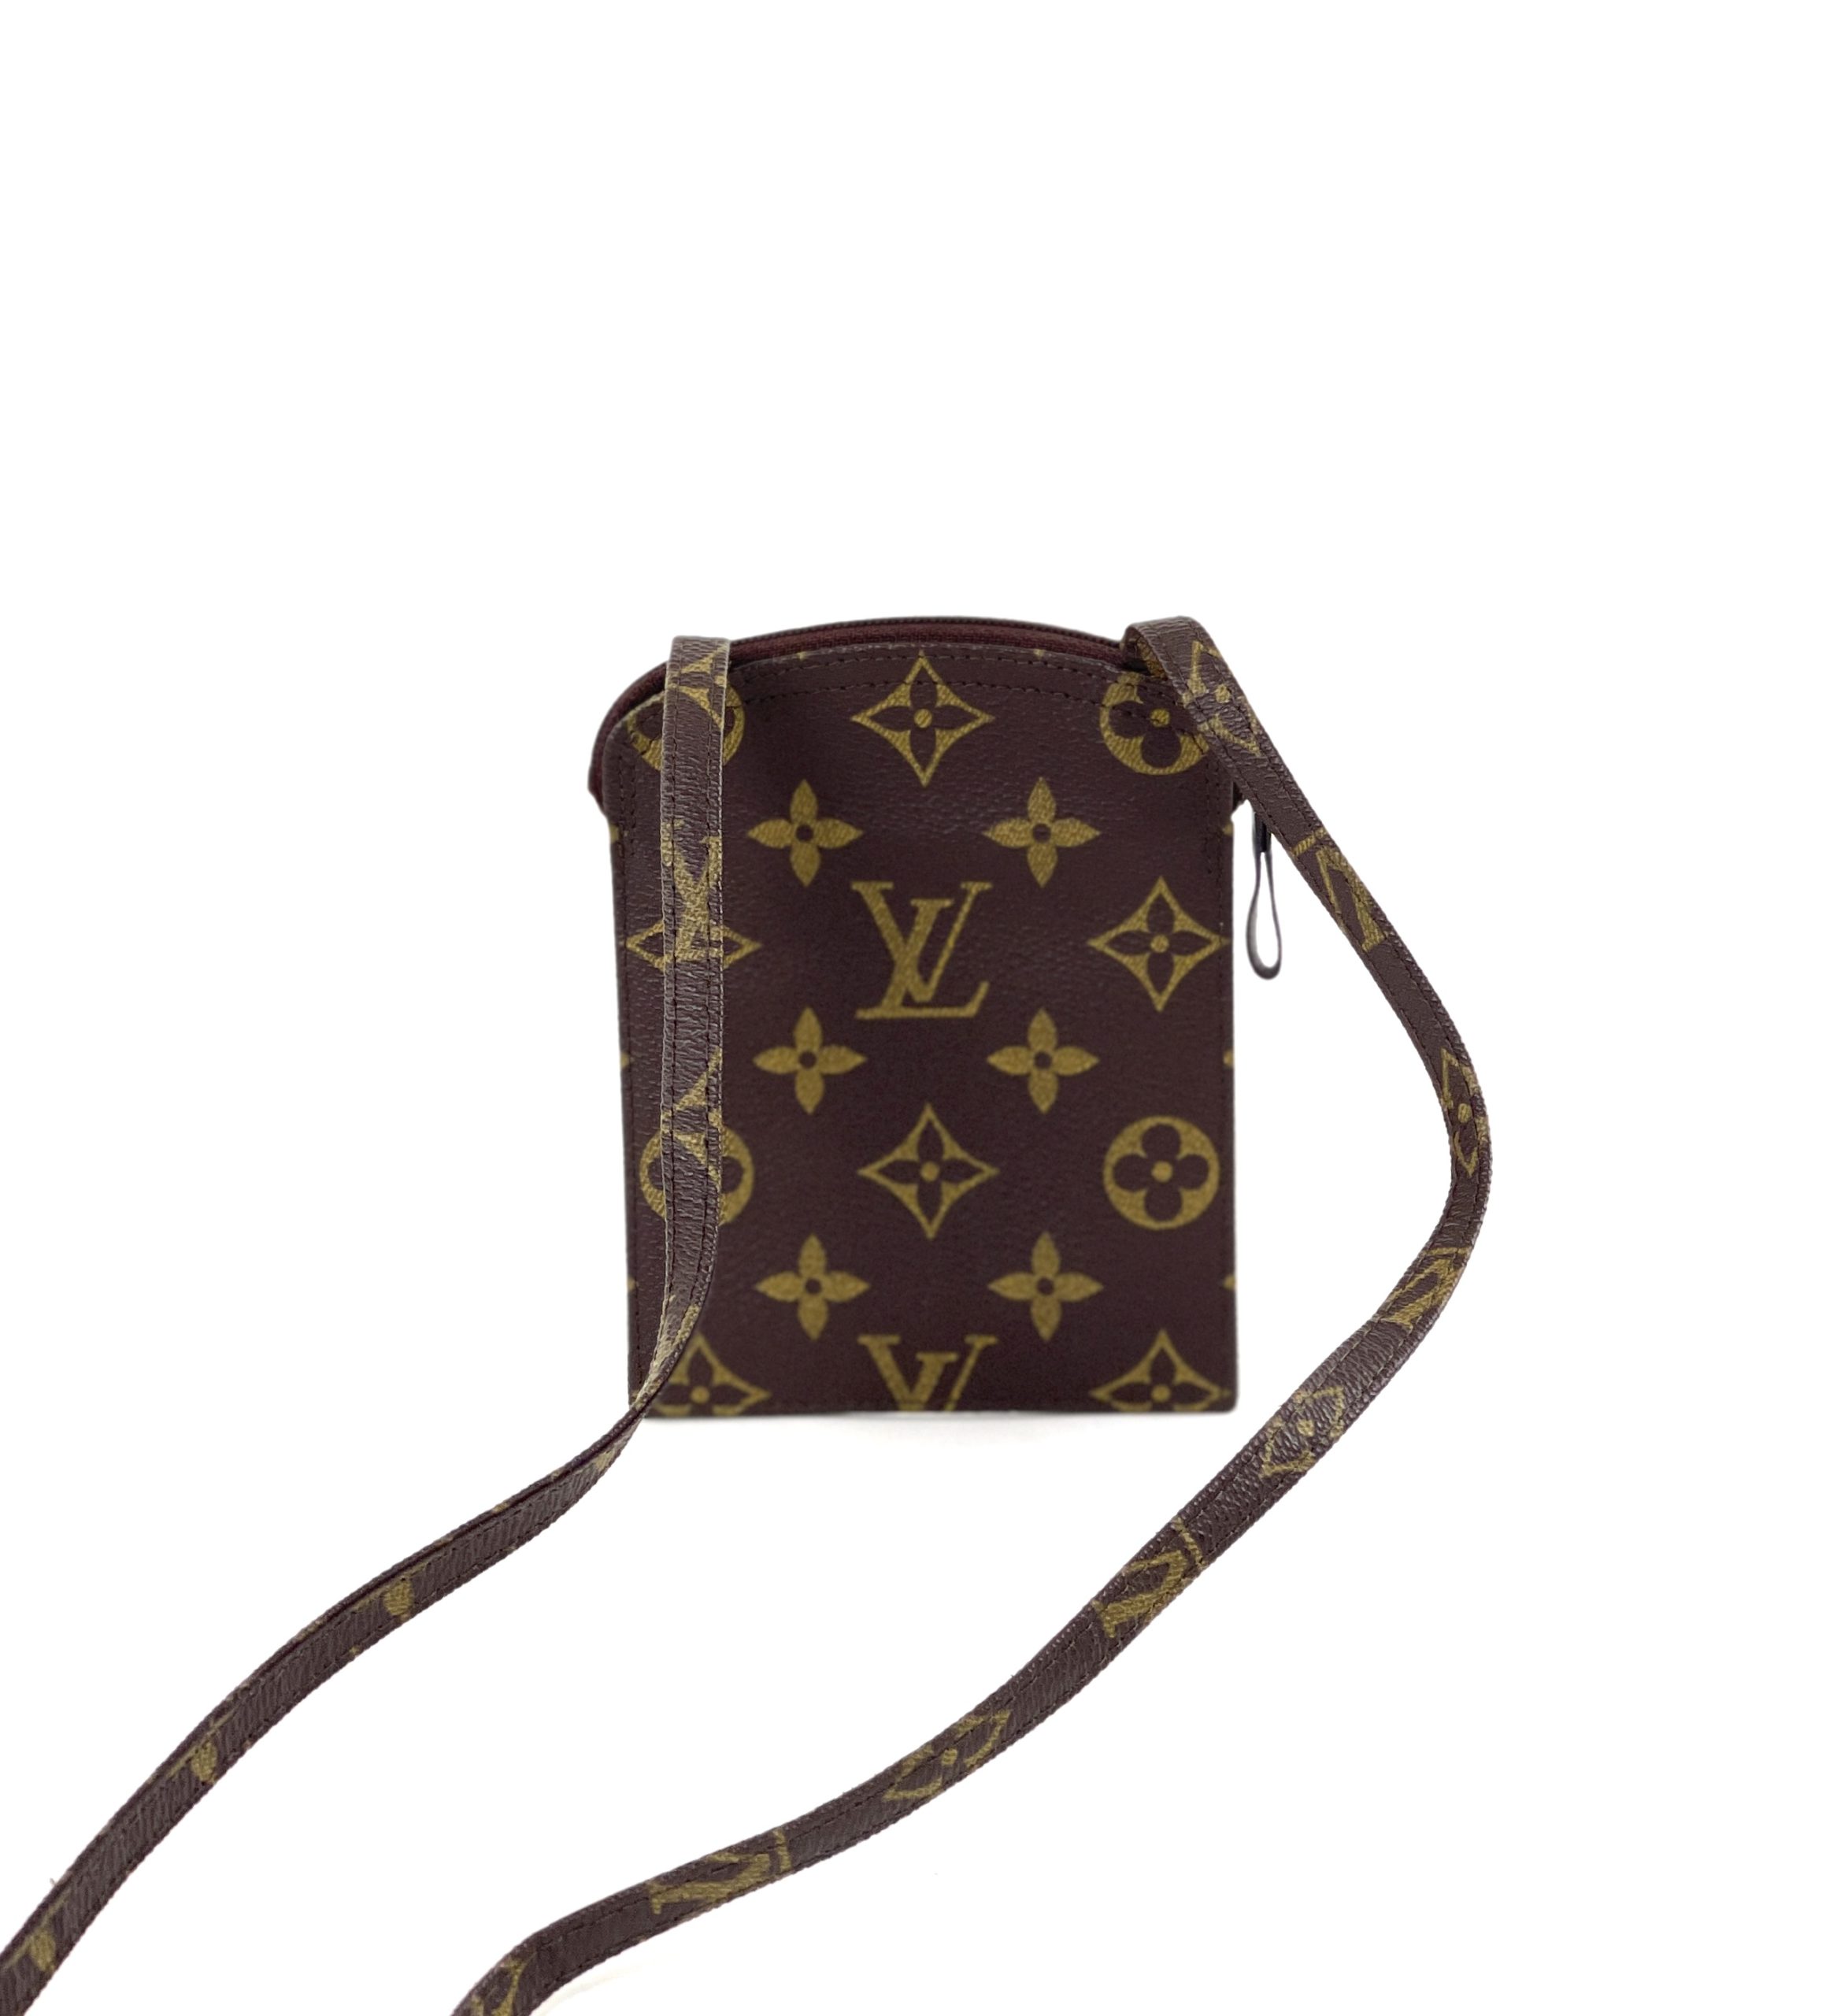 Louis Vuitton Monogram Passport Holder - A World Of Goods For You, LLC